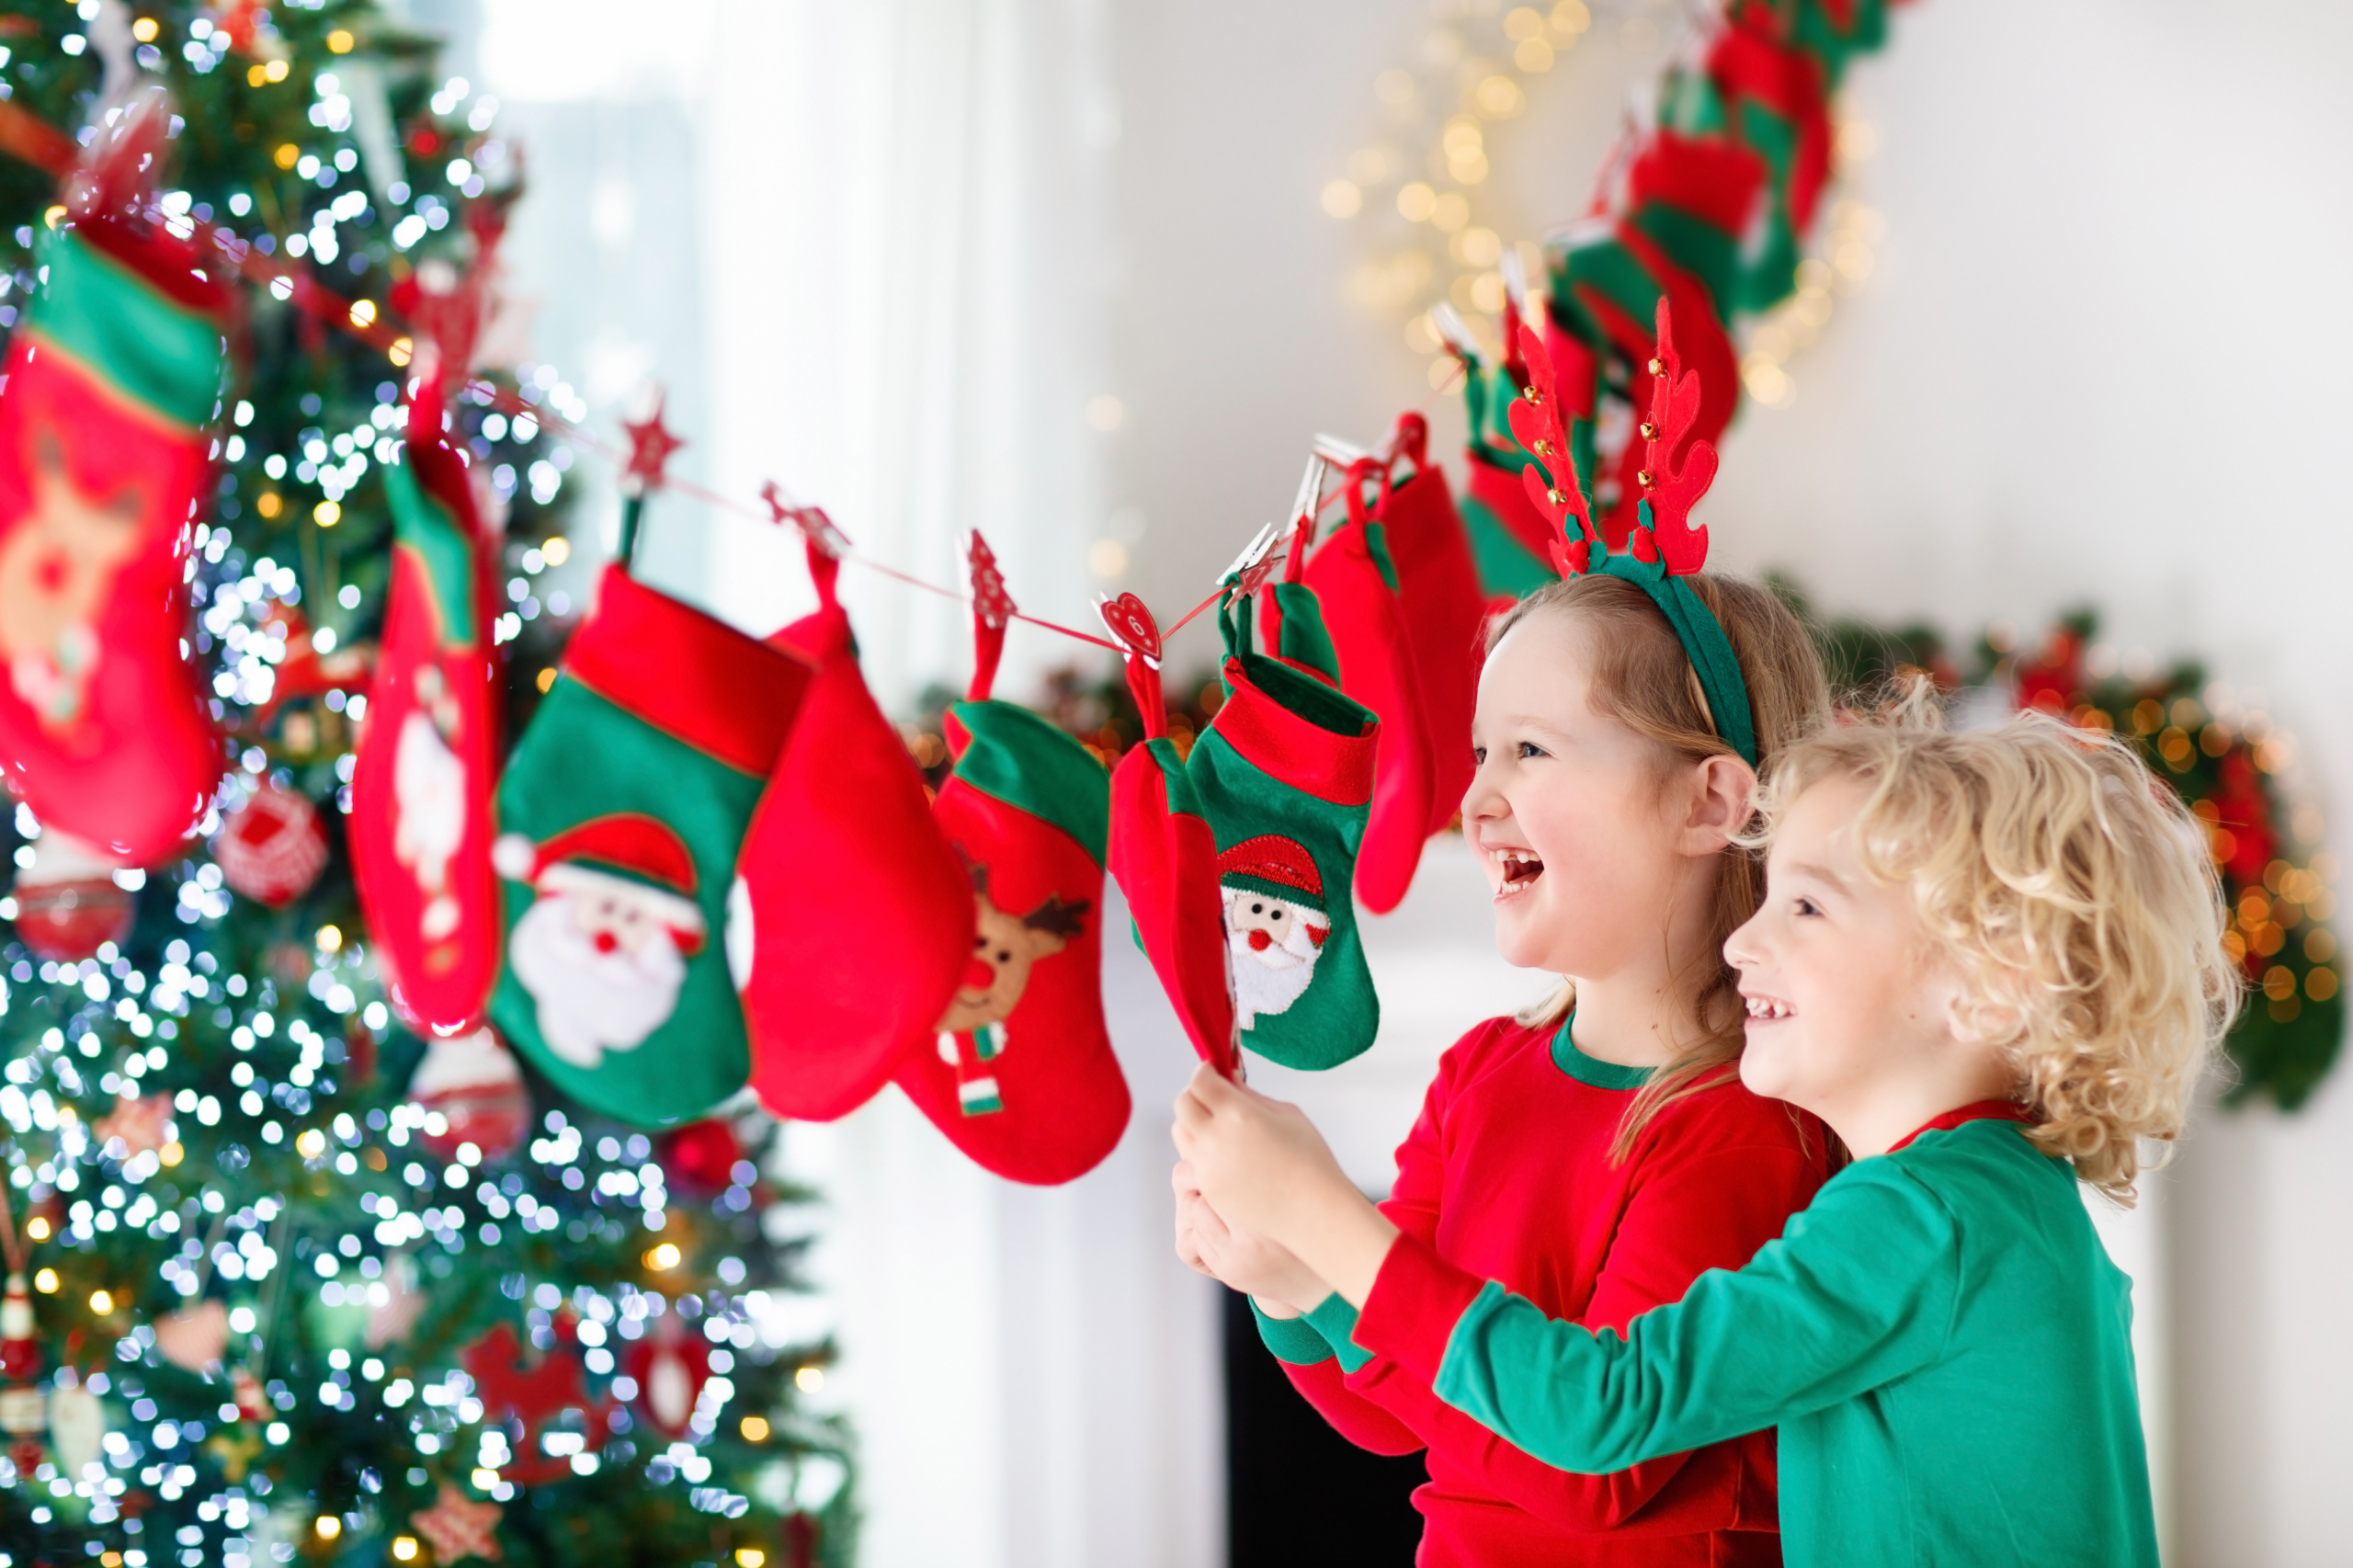 Viết các câu hỏi liên quan đến Giáng Sinh lên thiệp và treo quanh phòng để mọi người đoán. Gắn các tấm thiệp vào đồ trang trí như tất sẽ tạo thêm không khí lễ hội. (Ảnh: Shutterstock)